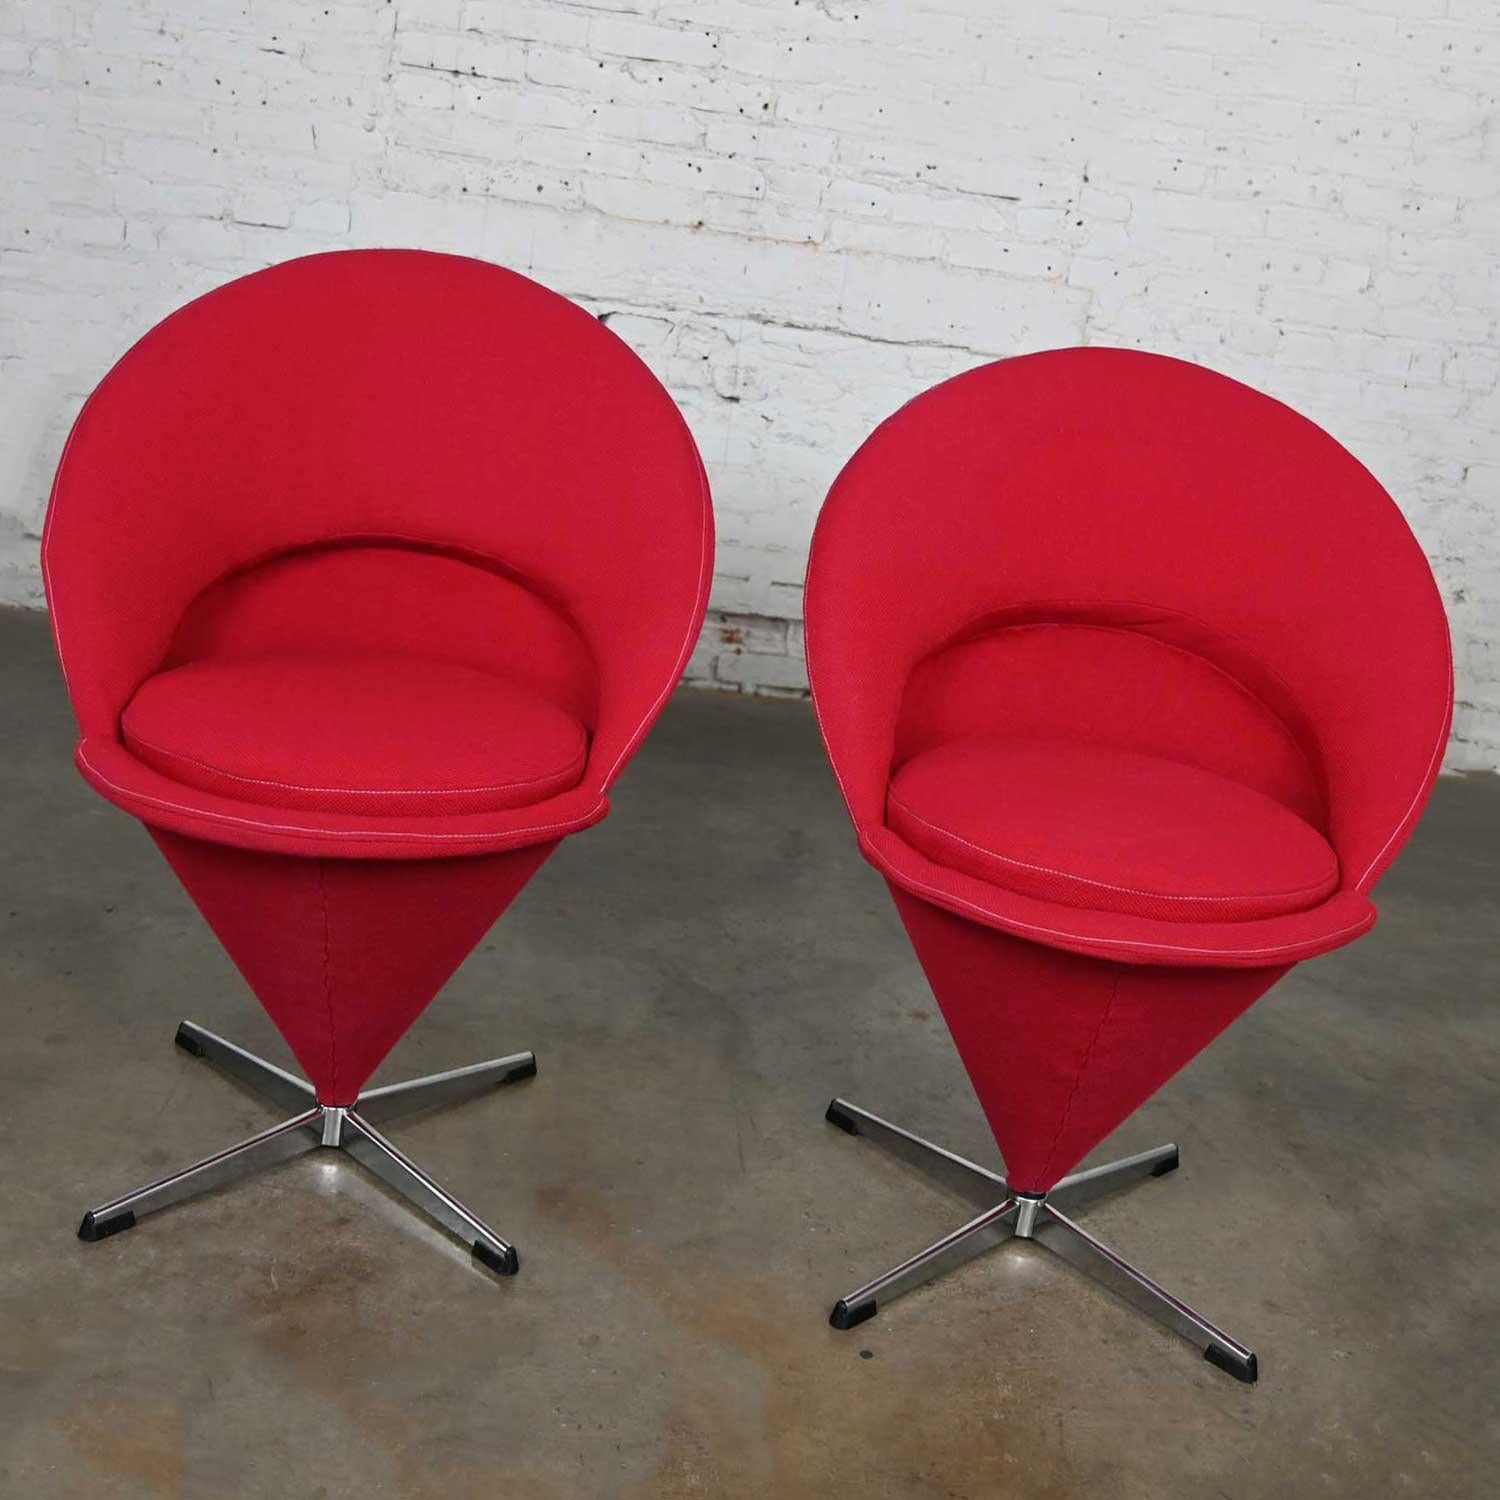 Wunderschönes Paar roter Cone-Stühle von Verner Panton für Fritz Hansen, bestehend aus roten, mit Hopfendraht bezogenen, gebogenen Blechrahmen, losen, runden Sitzkissen und vierzackigen, drehbaren Chromfüßen mit schwarzen Gleitern. Dieses Stück